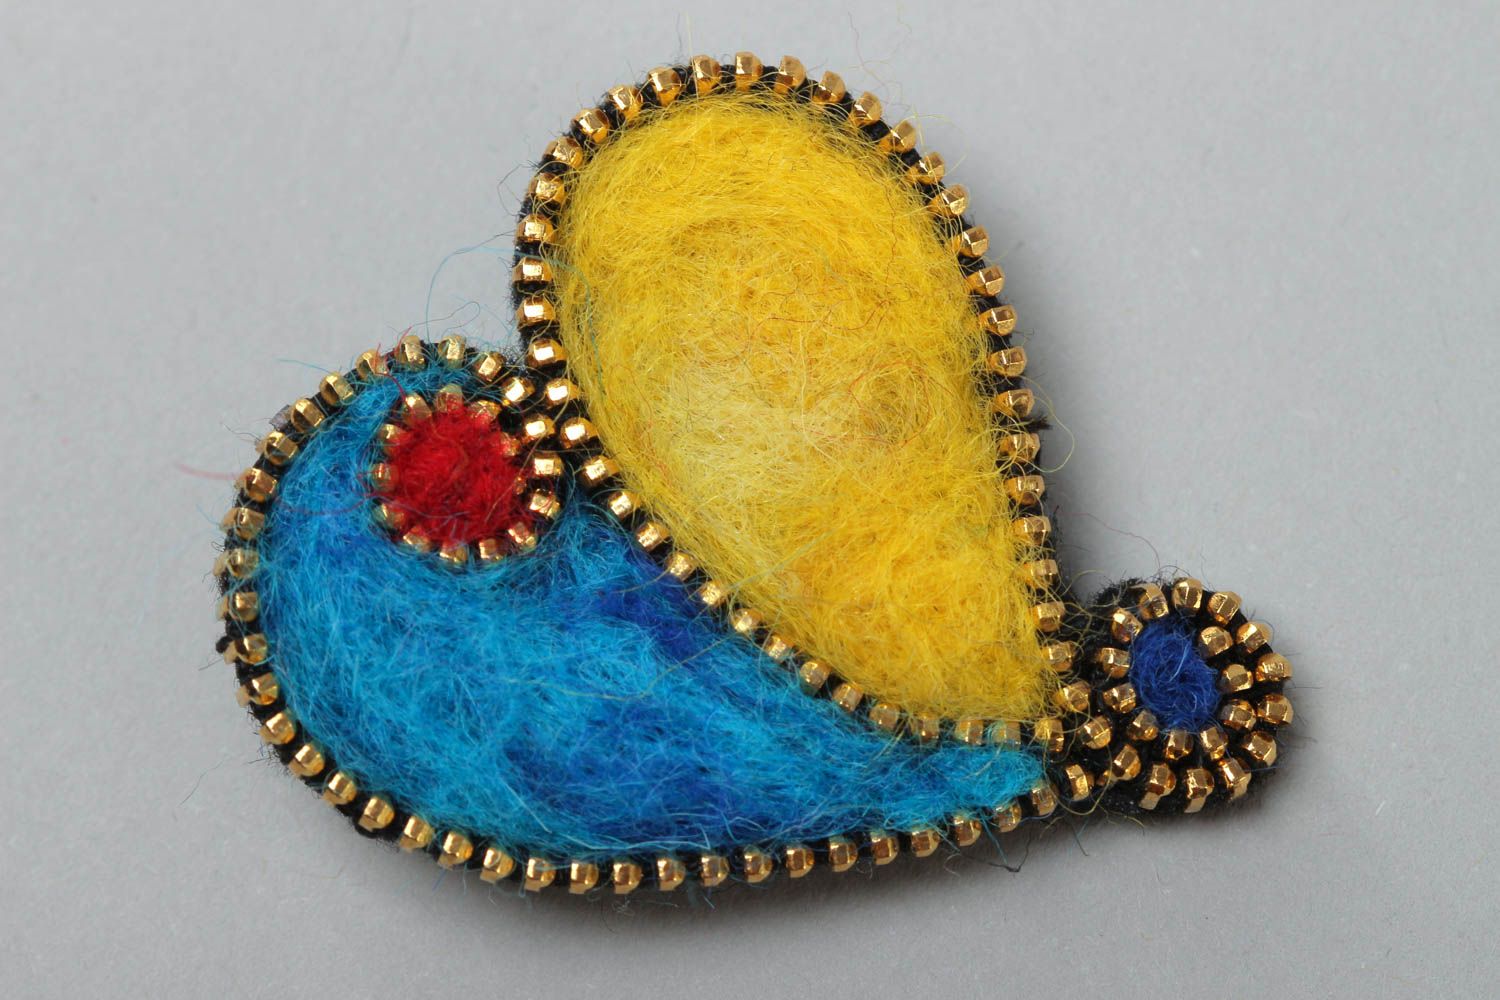 Брошь в технике валяния из шерсти в виде сердца желтая с голубым ручной работы фото 2